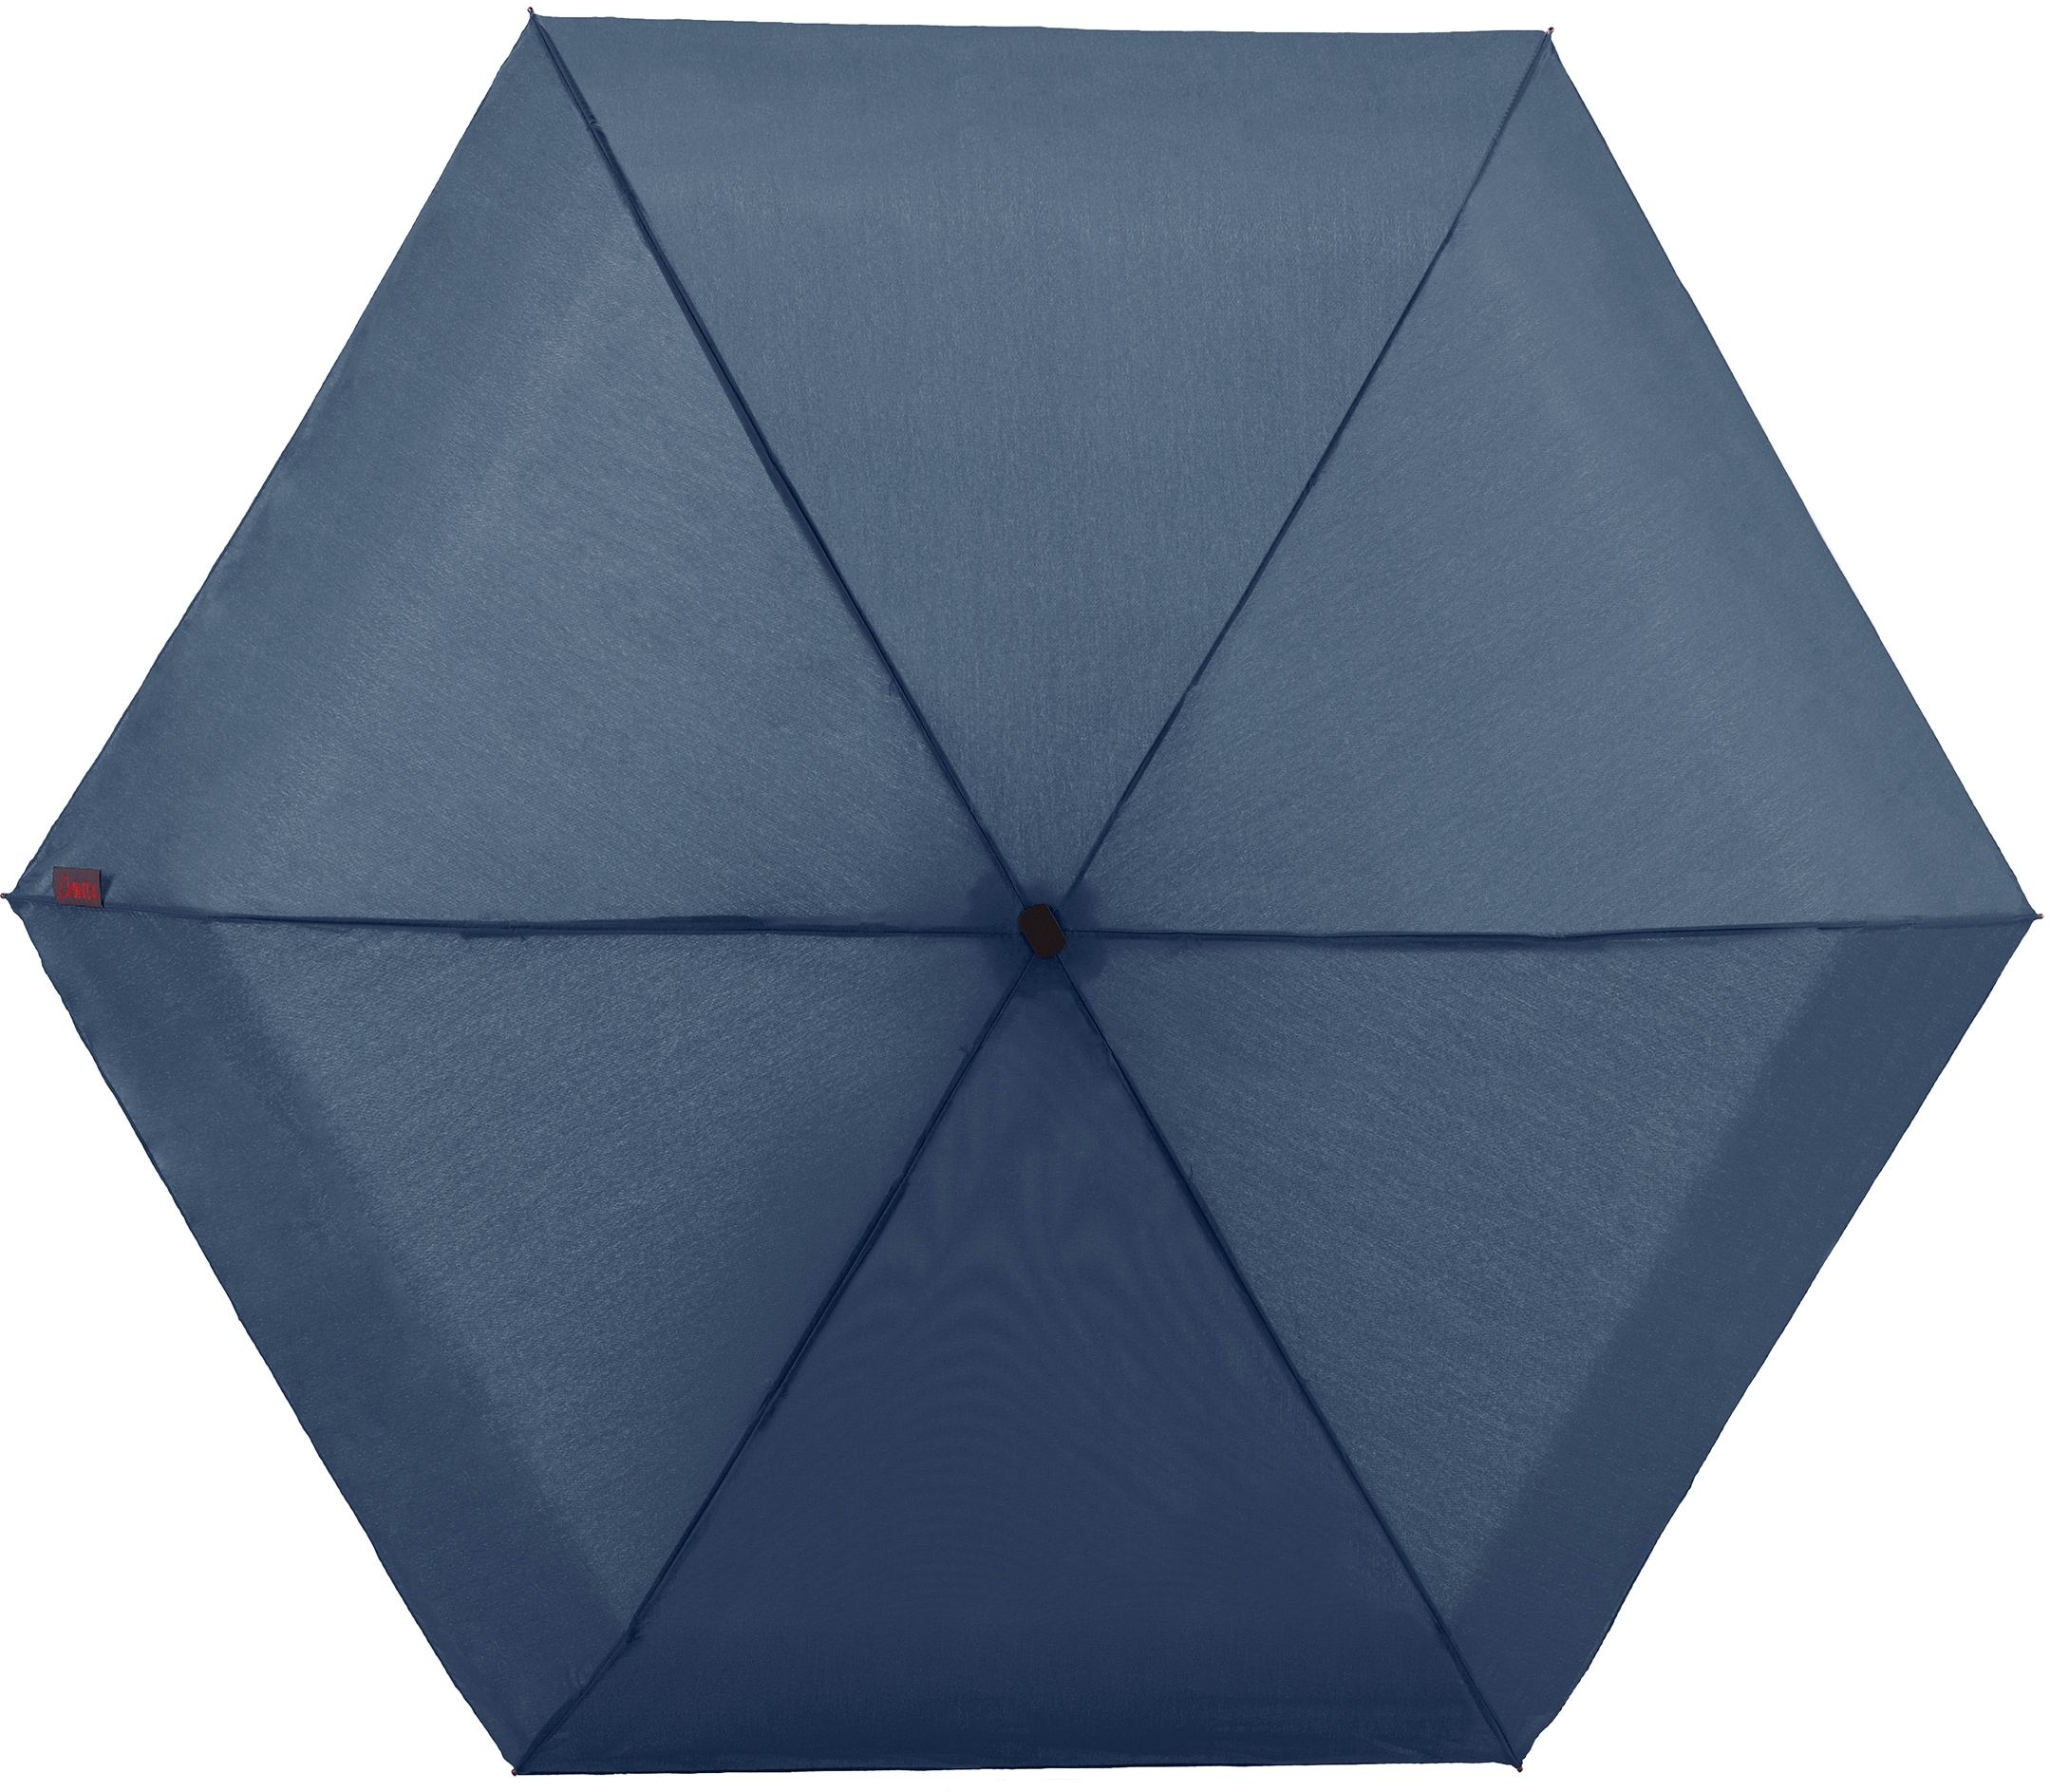 EuroSCHIRM® Taschenregenschirm »Dainty marineblau« extra flach und kurz